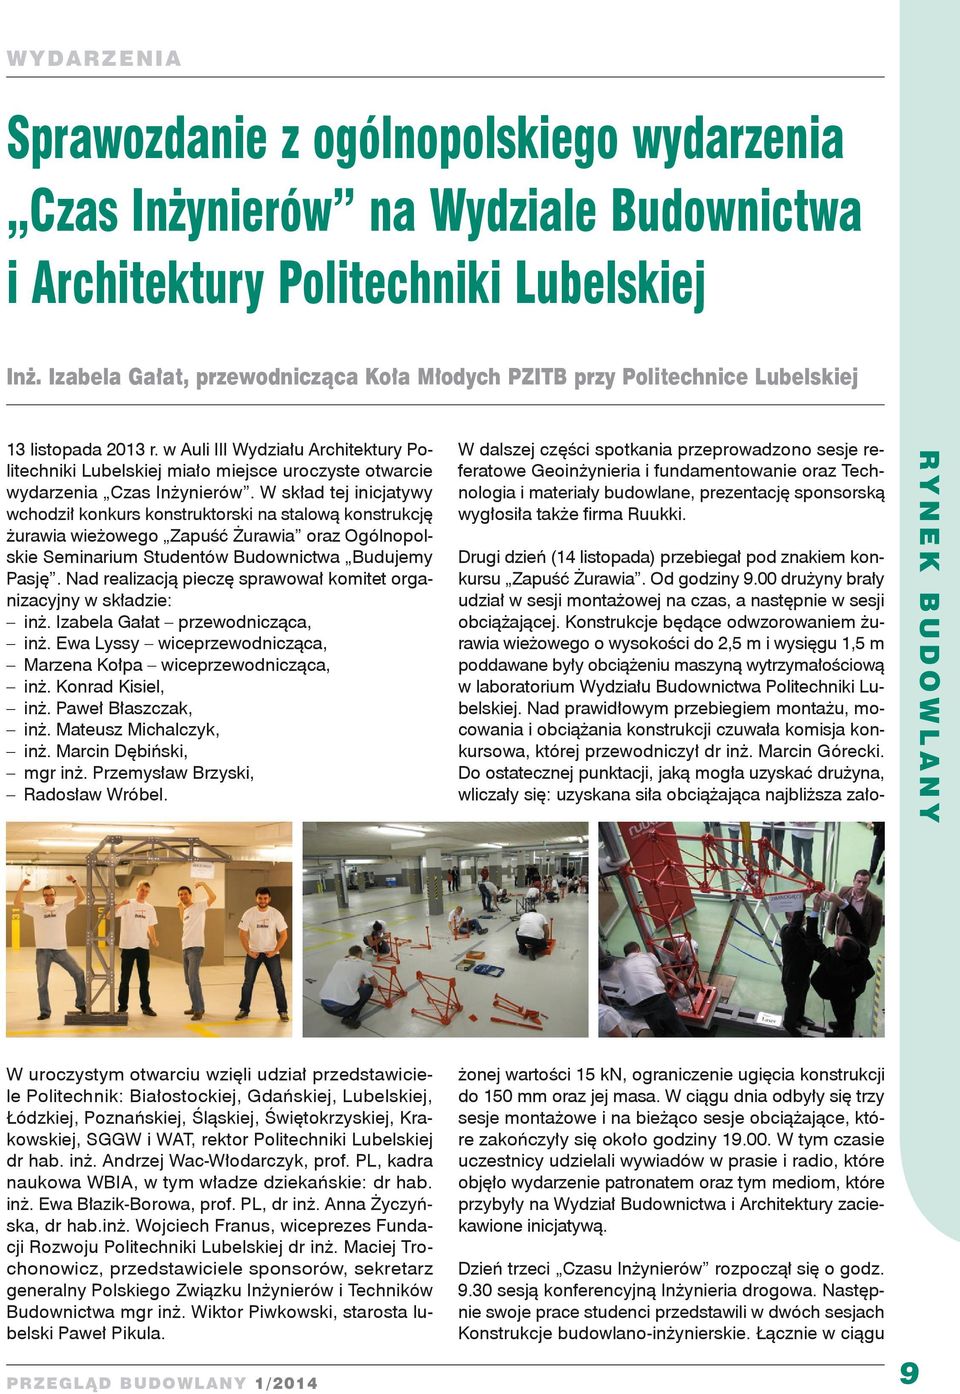 w Auli III Wydziału Architektury Politechniki Lubelskiej miało miejsce uroczyste otwarcie wydarzenia Czas Inżynierów.